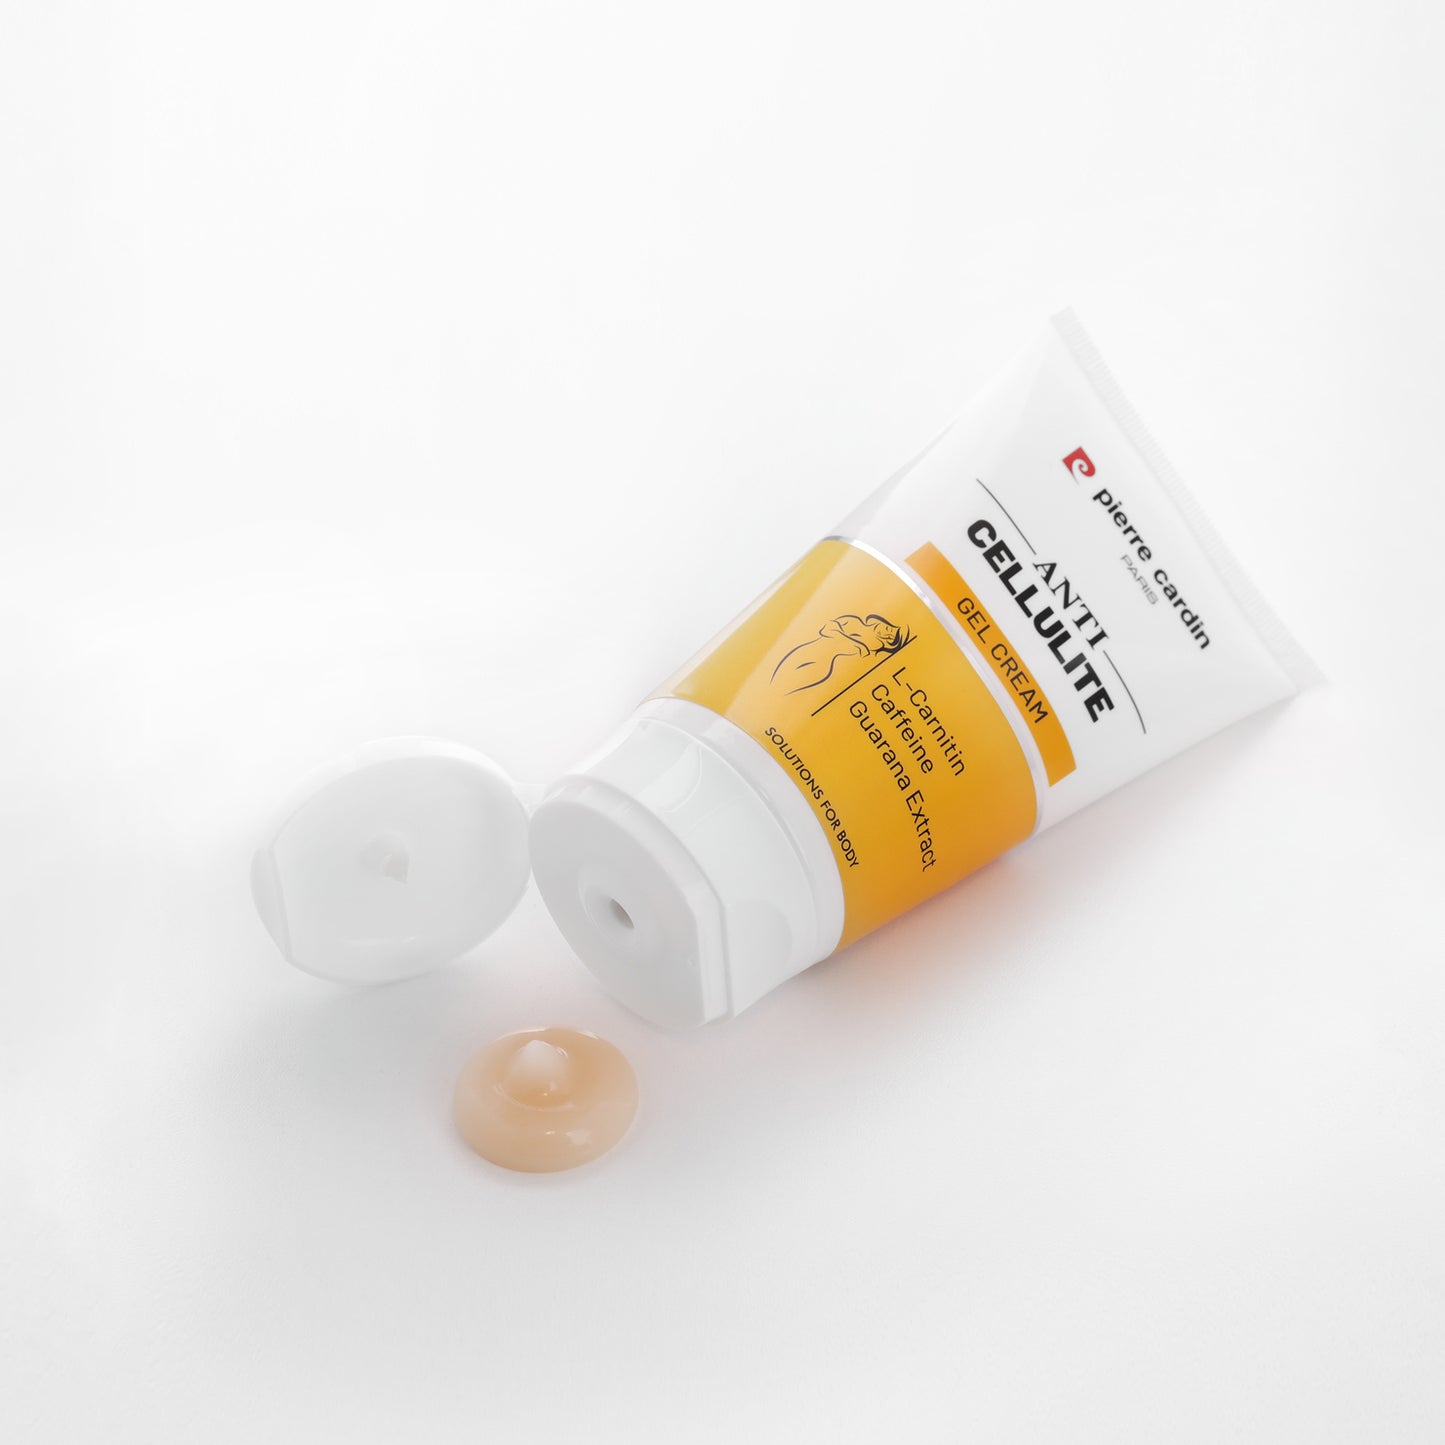 Pierre Cardin | Gel Crème Anti-Cellulite | 150 ml